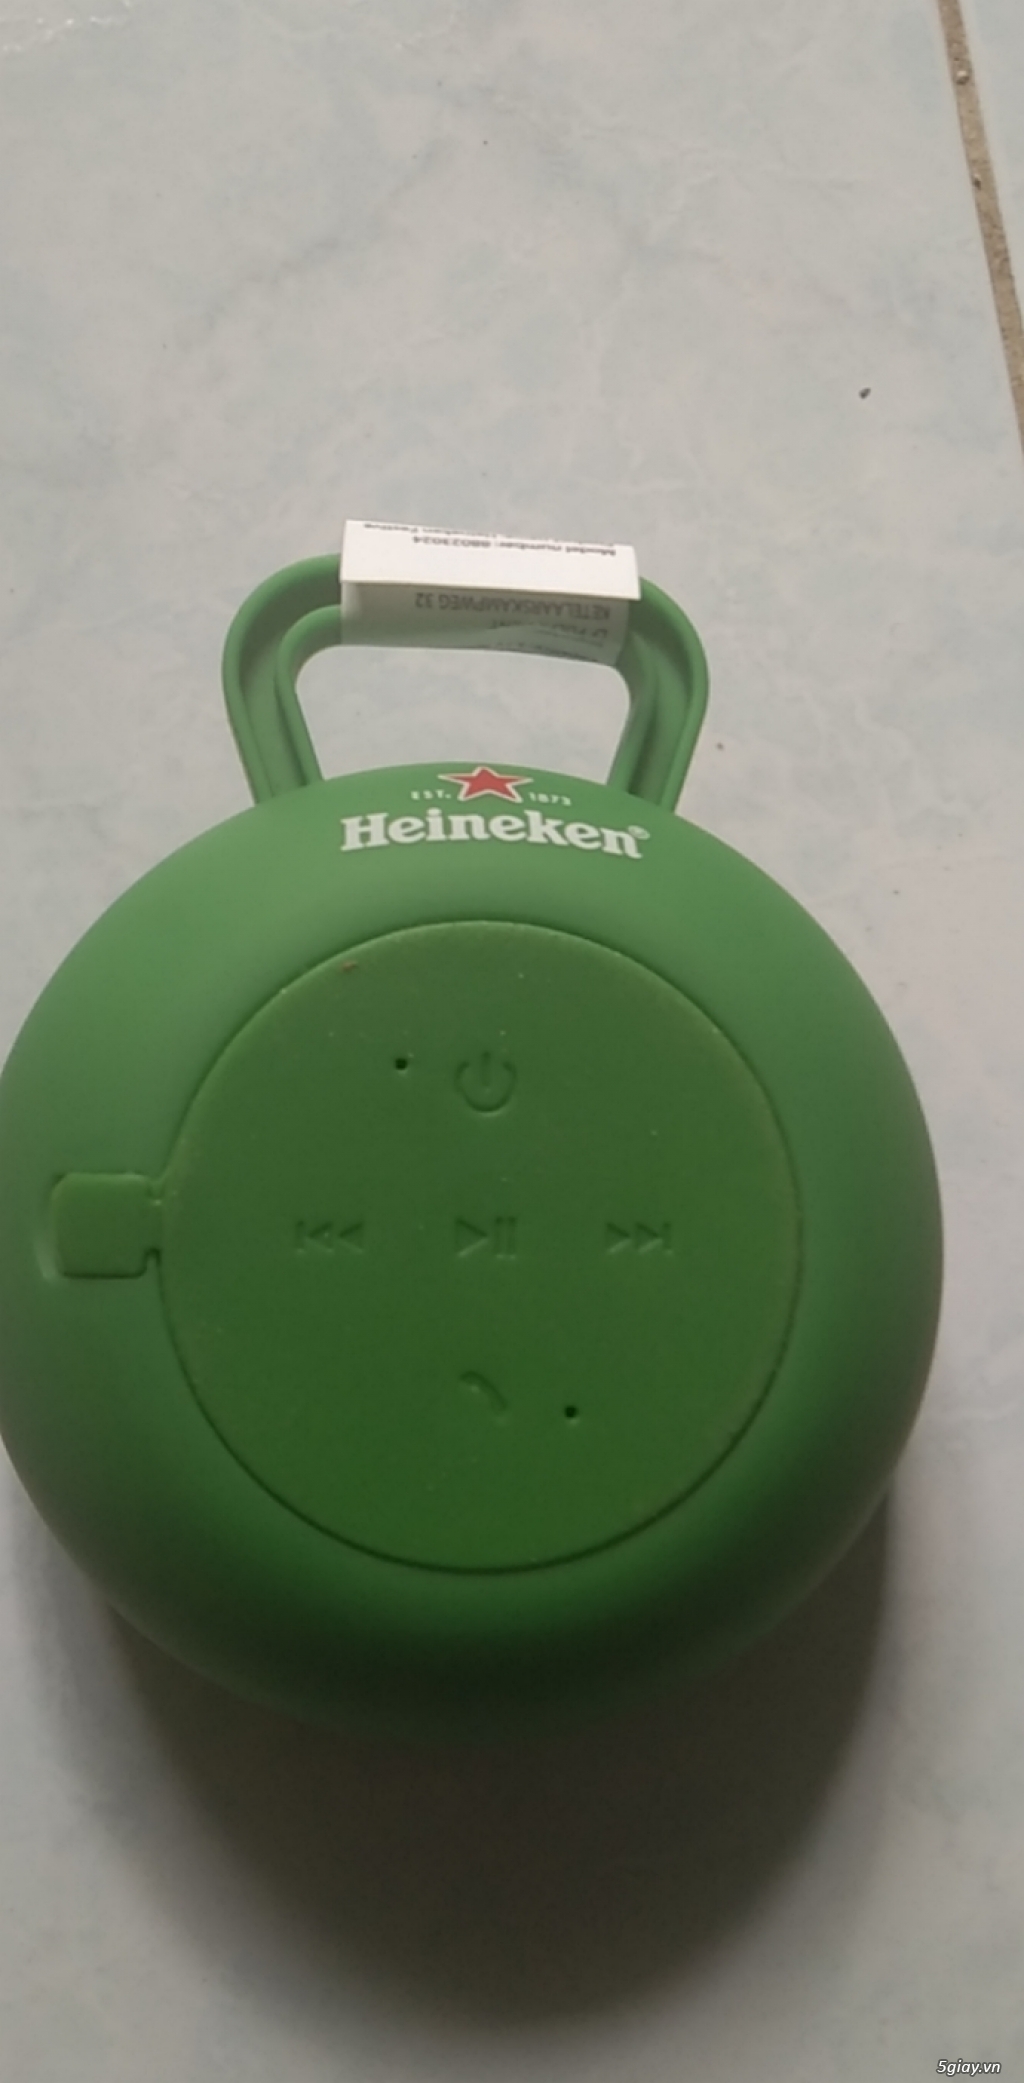 Bán Loa Bluetooth Heineken Festive - 1